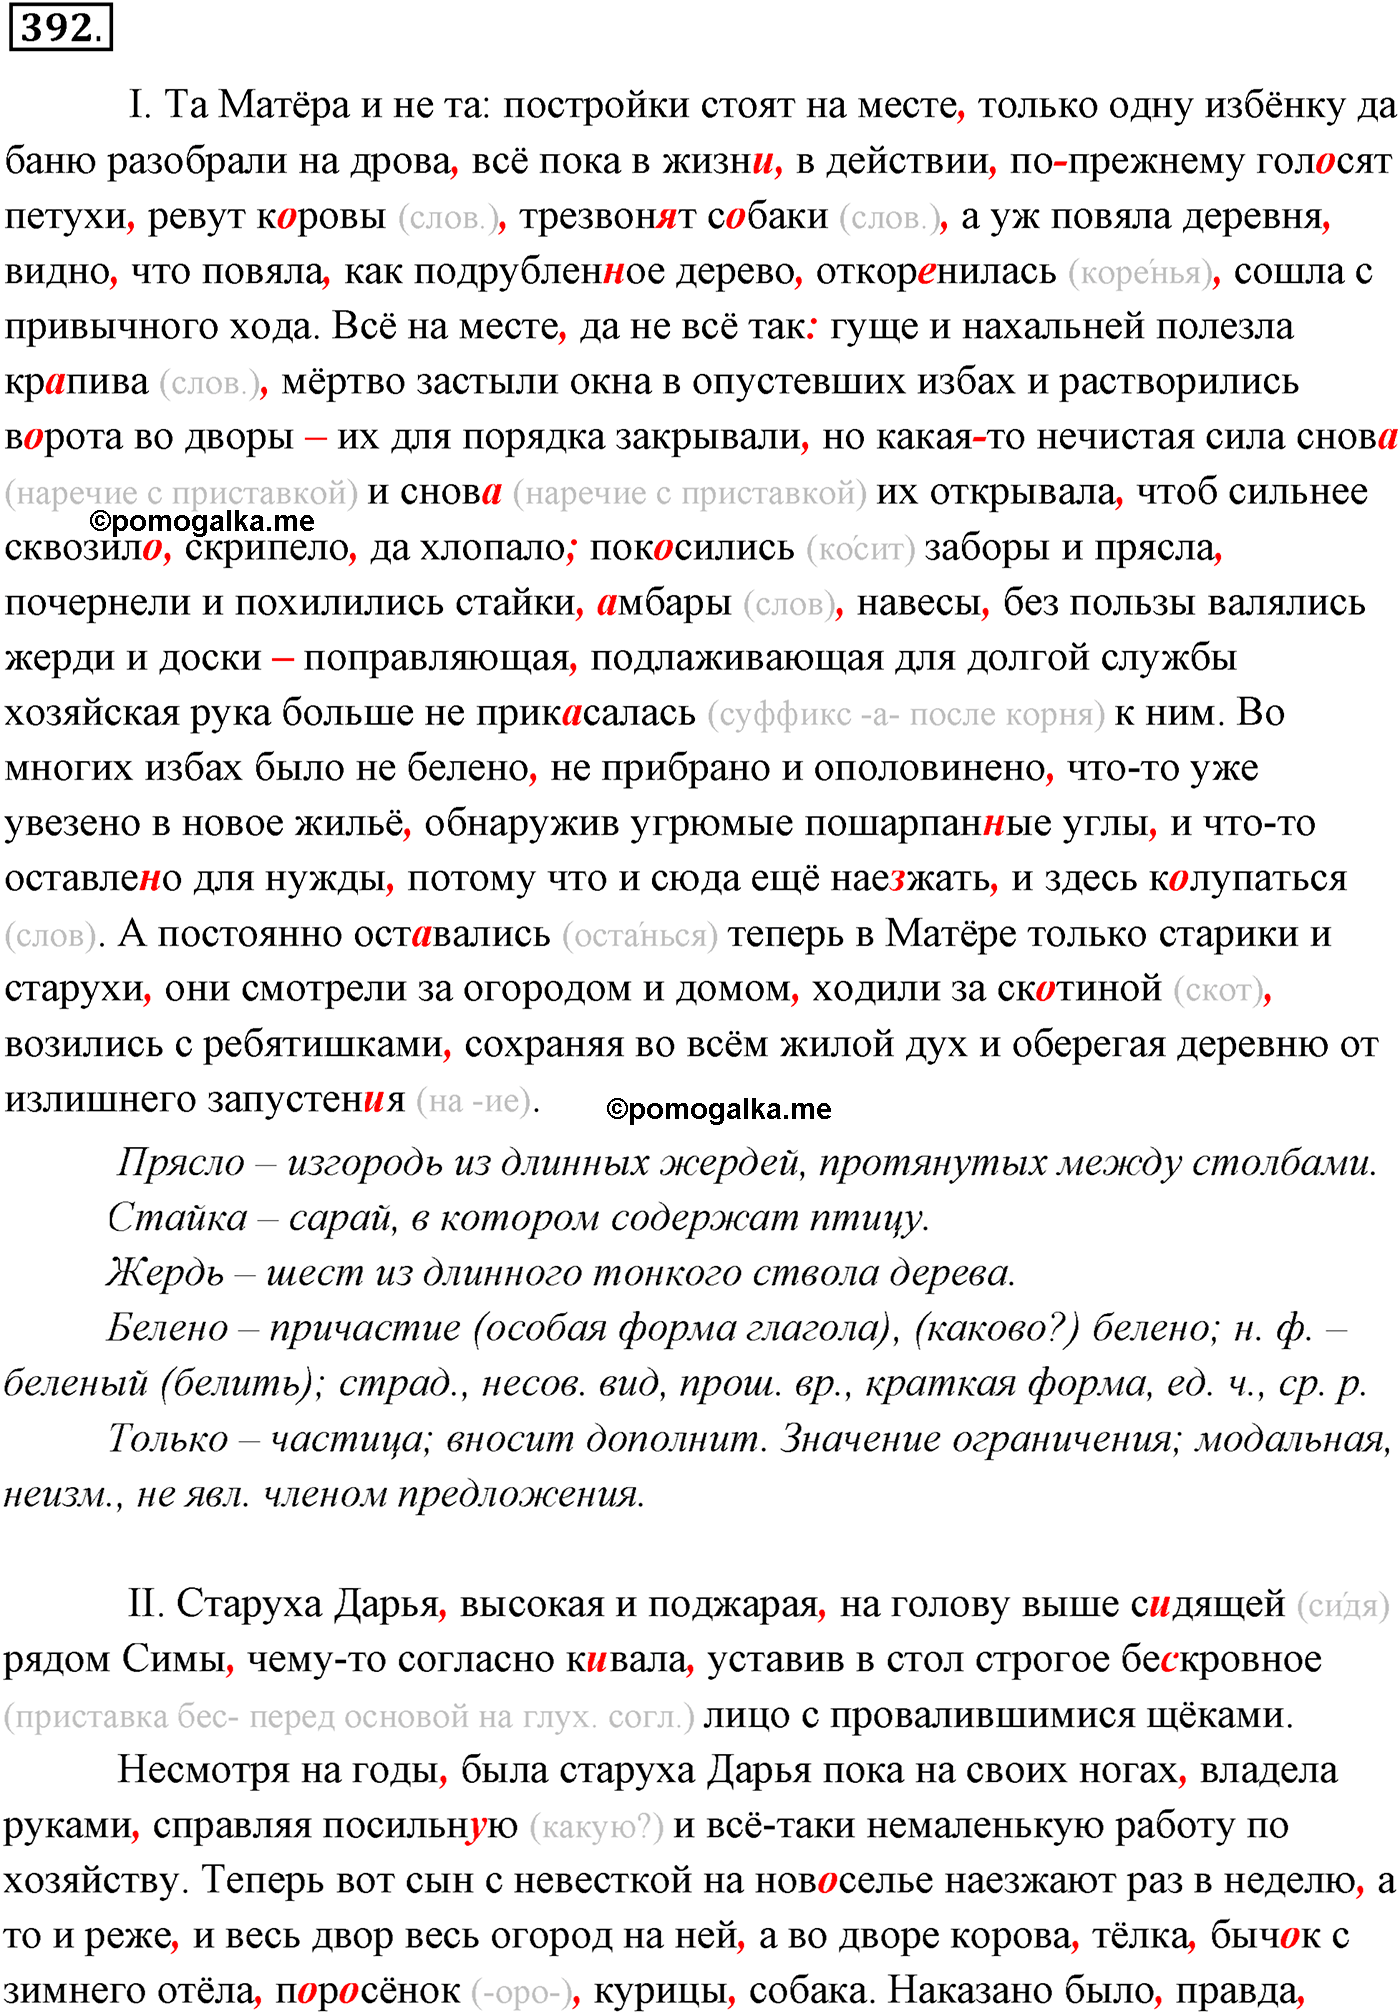 упражнение №392-2 русский язык 10-11 класс Власенков